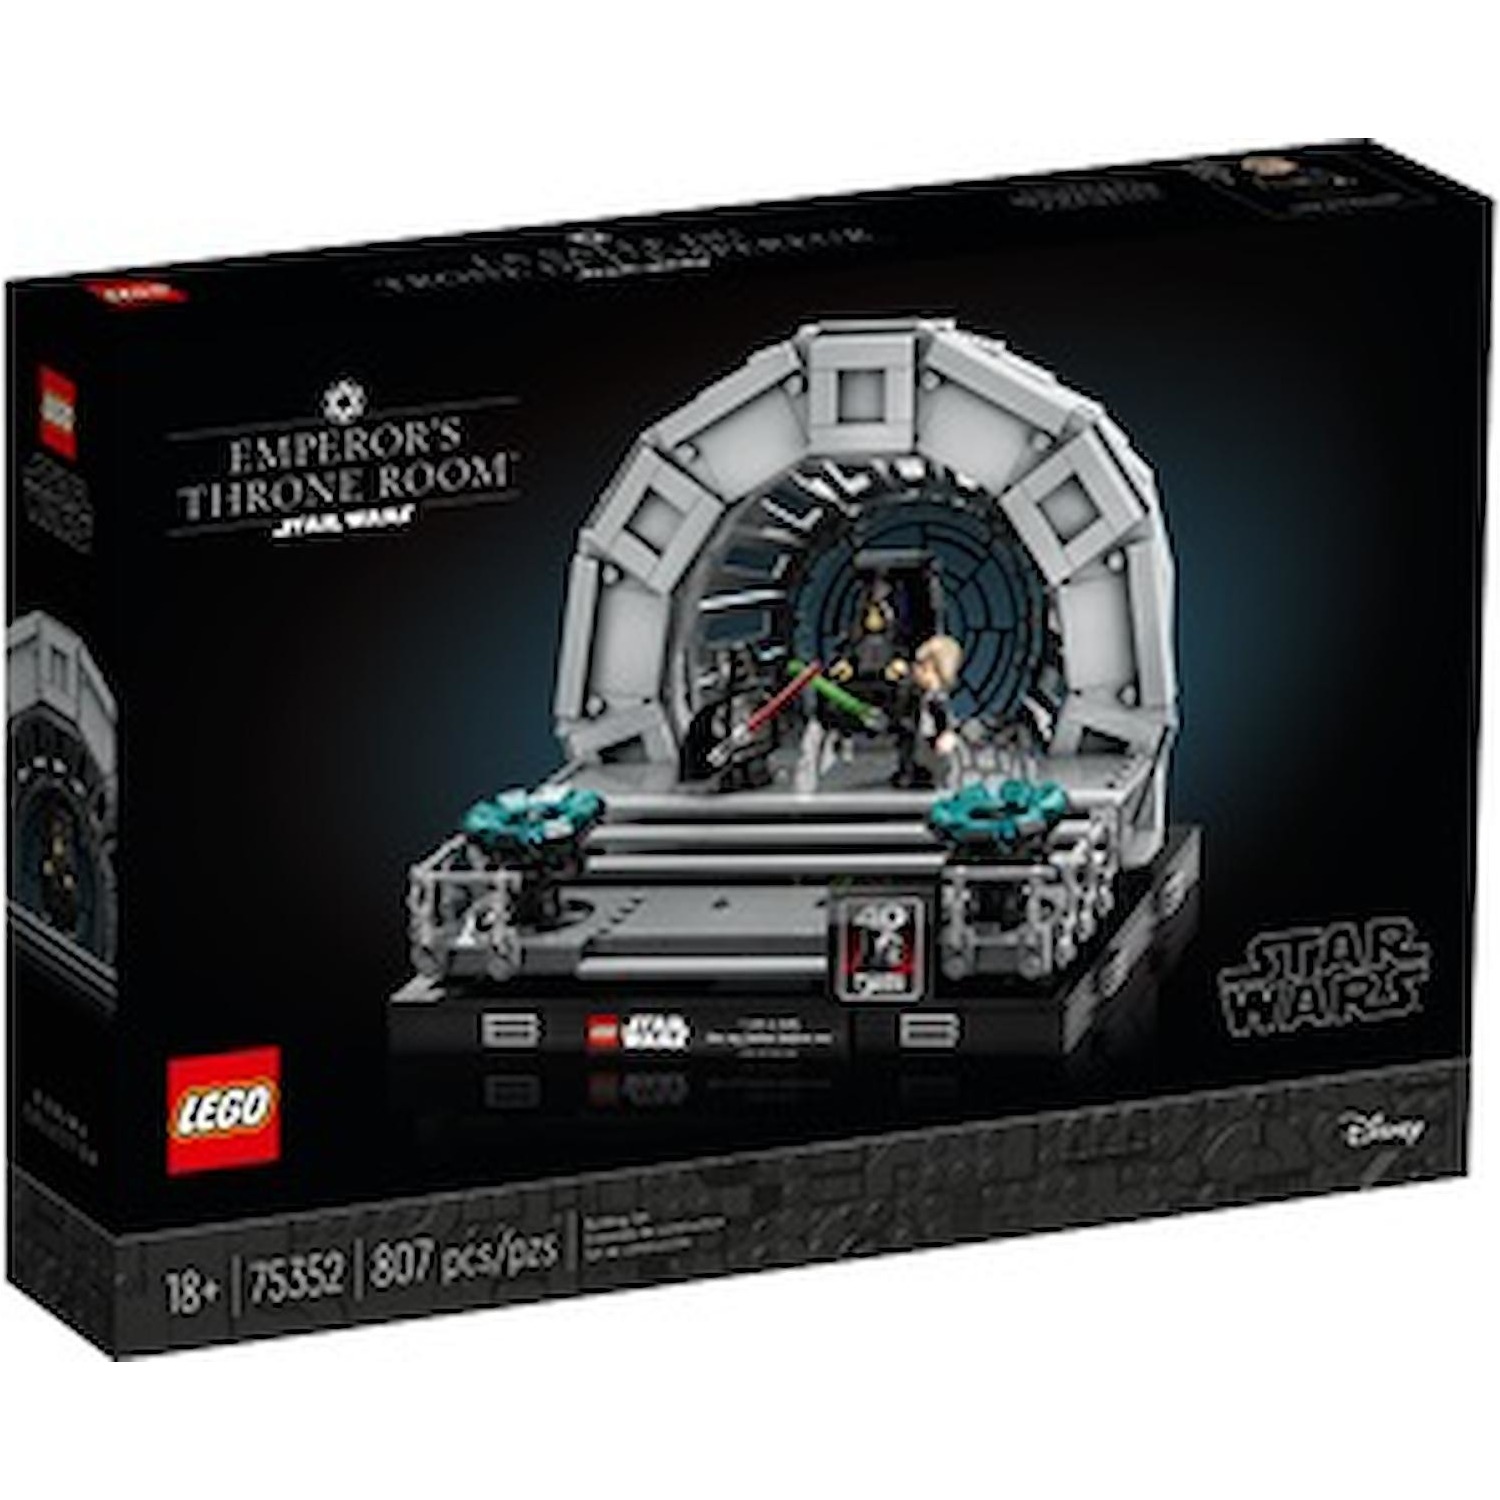 Immagine per Lego Star Wars Diorama Sala del trono dell'Imperatore da DIMOStore